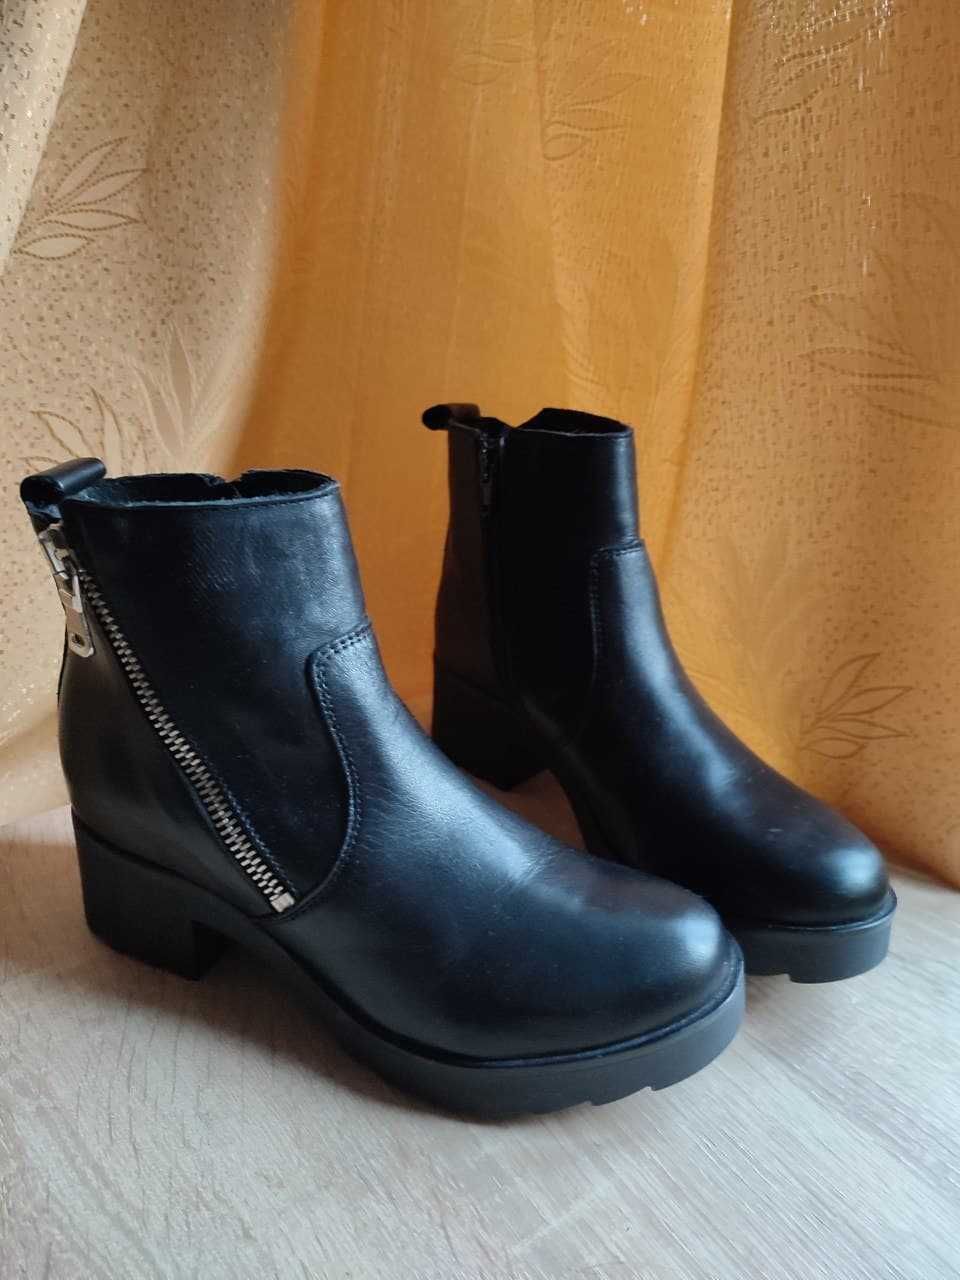 Кожаные ботинки с молнией Zign, размер 38 EU